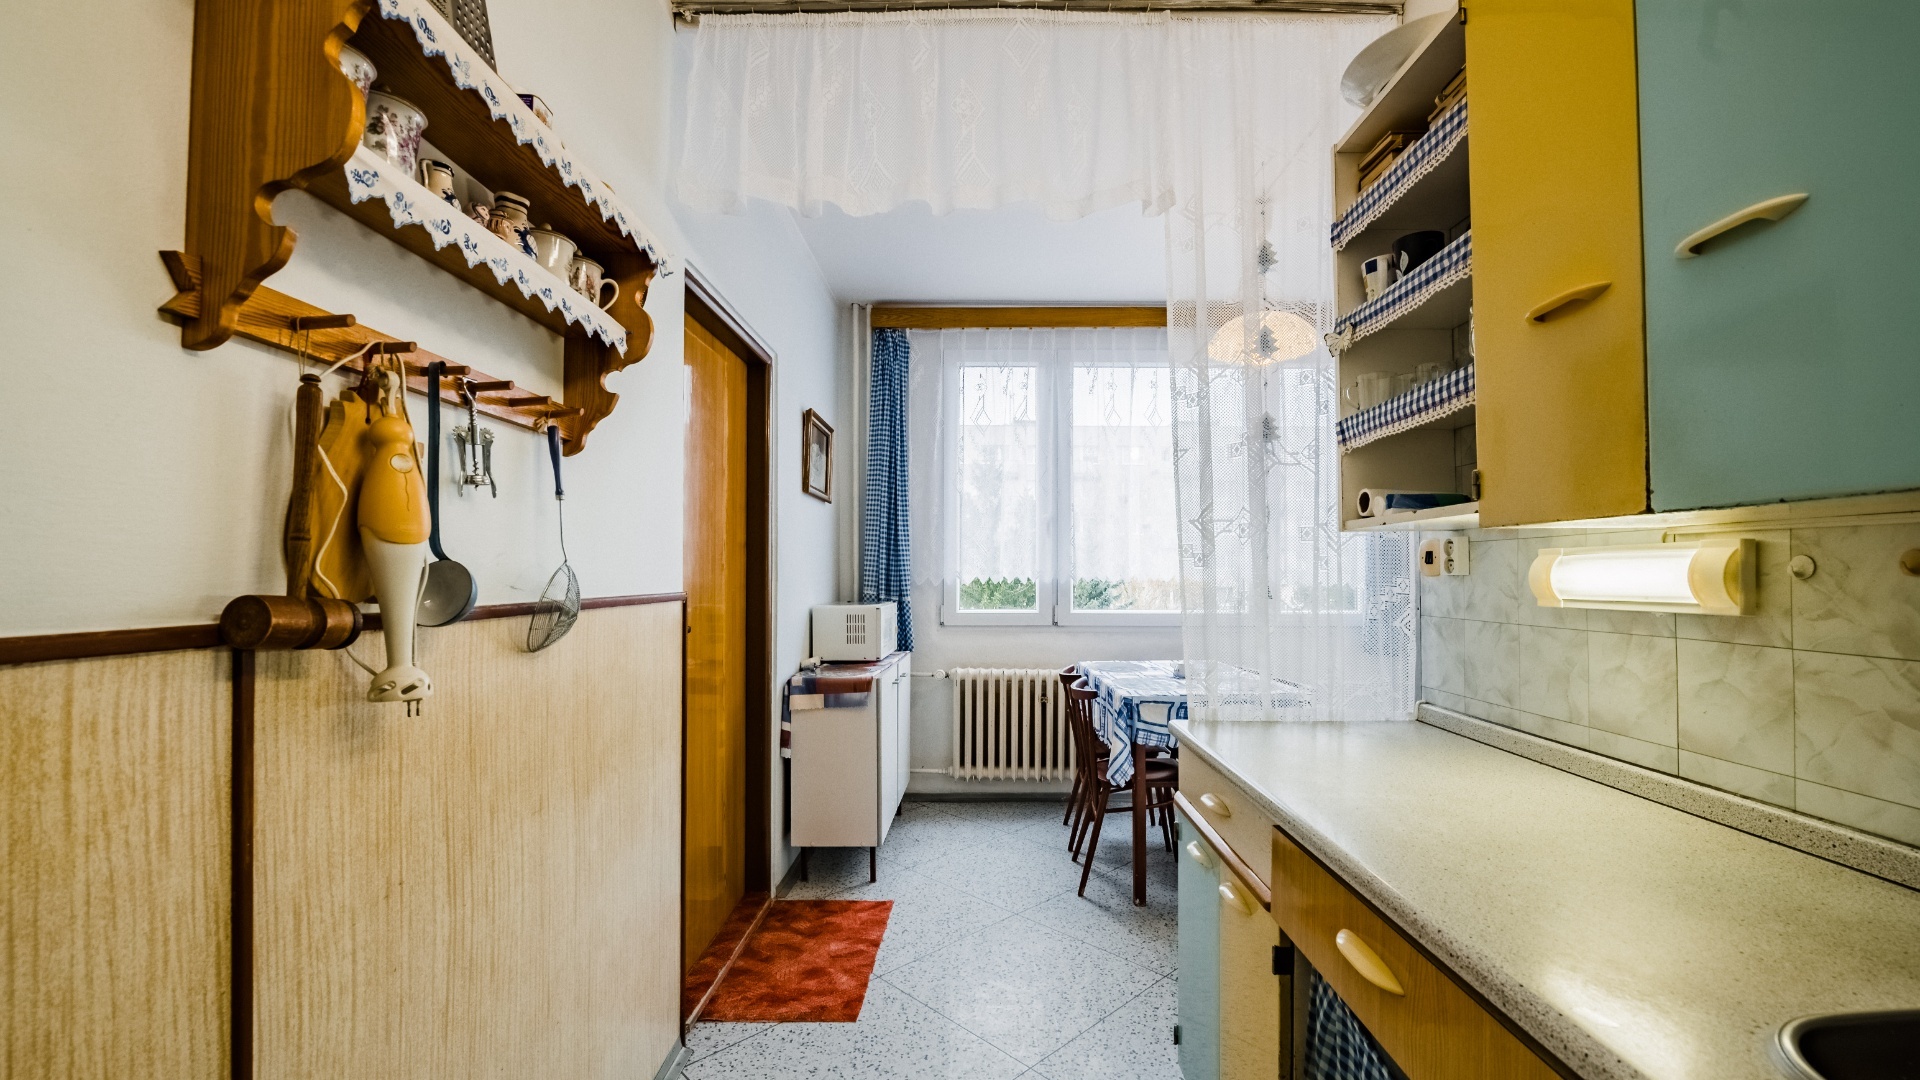 Prodej bytu 3+1 v osobním vlastnictví, 84 m², s balkónem a komorou, Tábor - Pražské sídliště